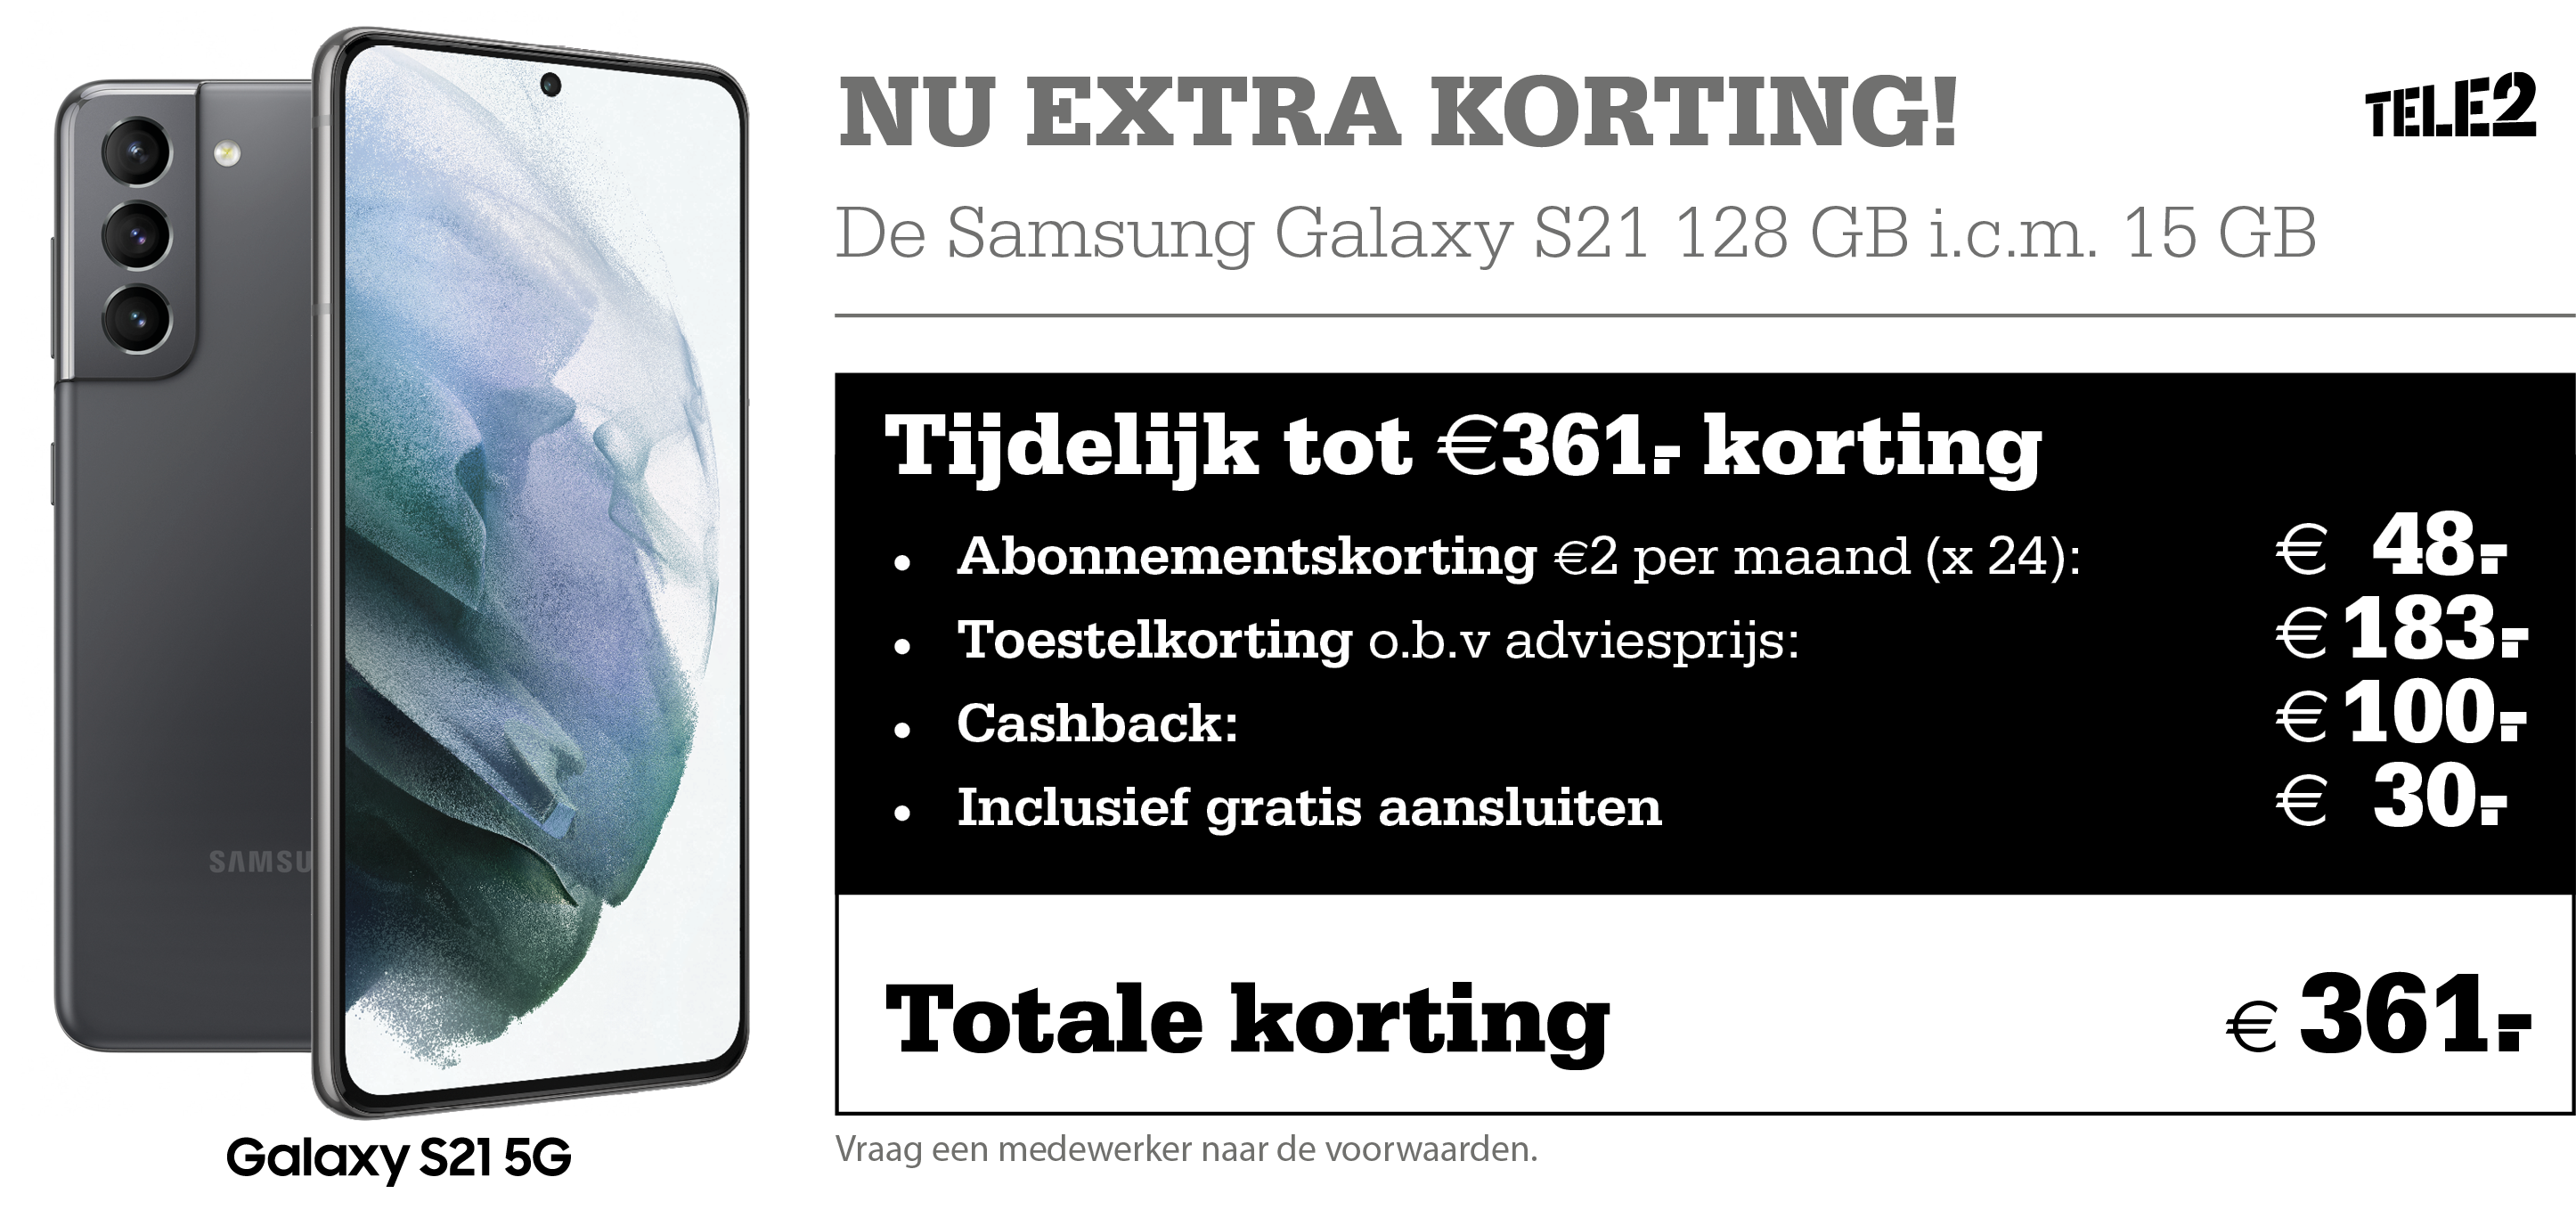 Profiteer bij Telecombinatie nu van extra voordeel op Tele2-Mobiel! Want je profiteert tijdelijk van extra scherpe prijzen, zoals €2,- korting per maand en extra data!